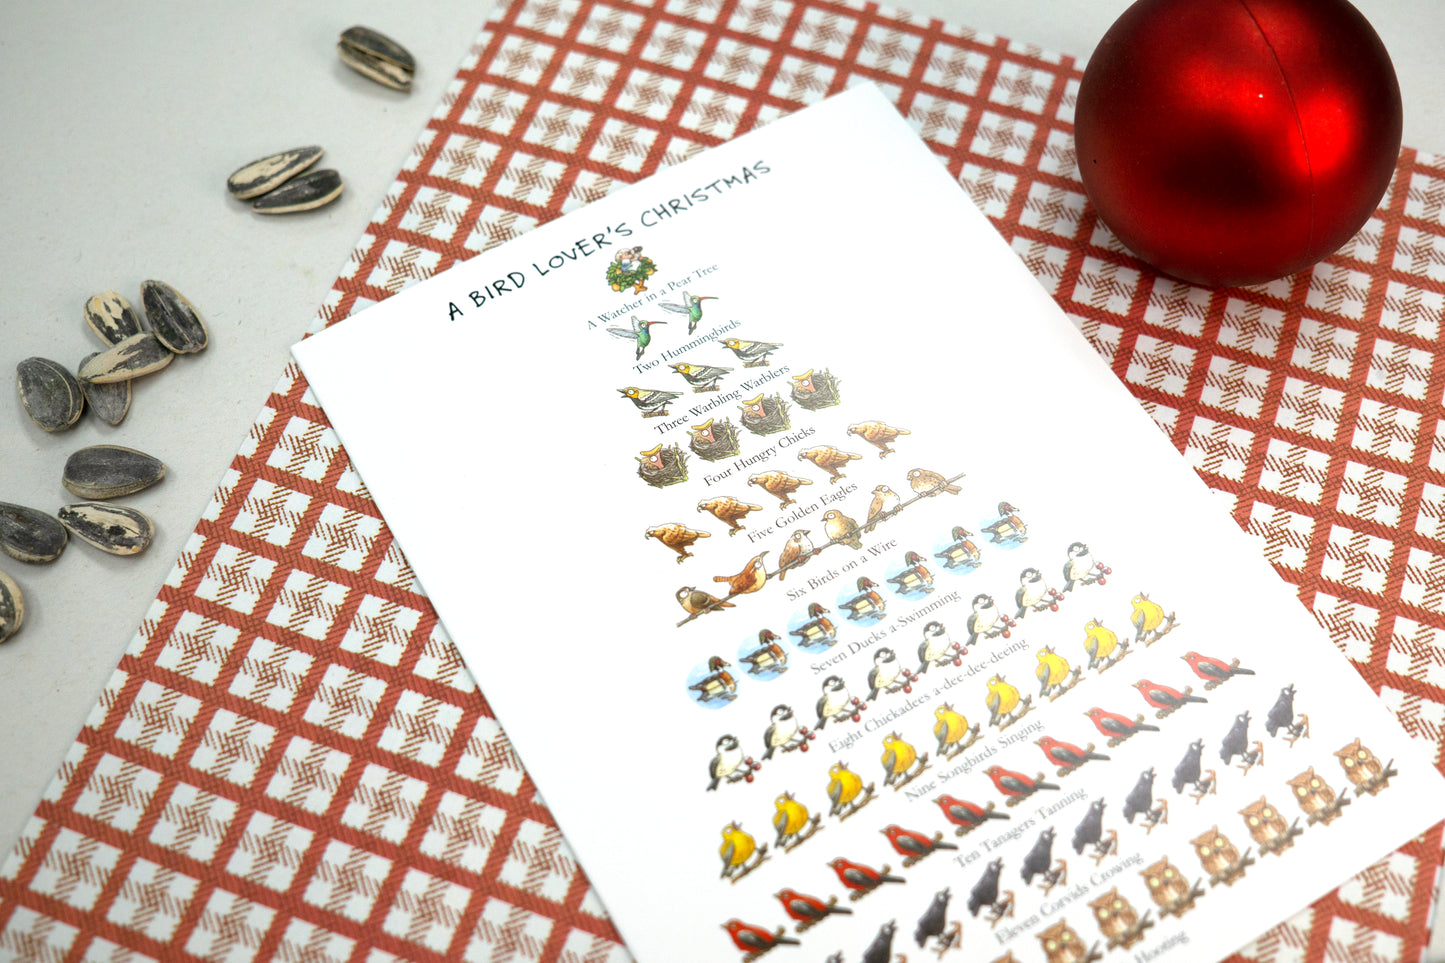 Bird Lover's Christmas 12-Days Holiday Card